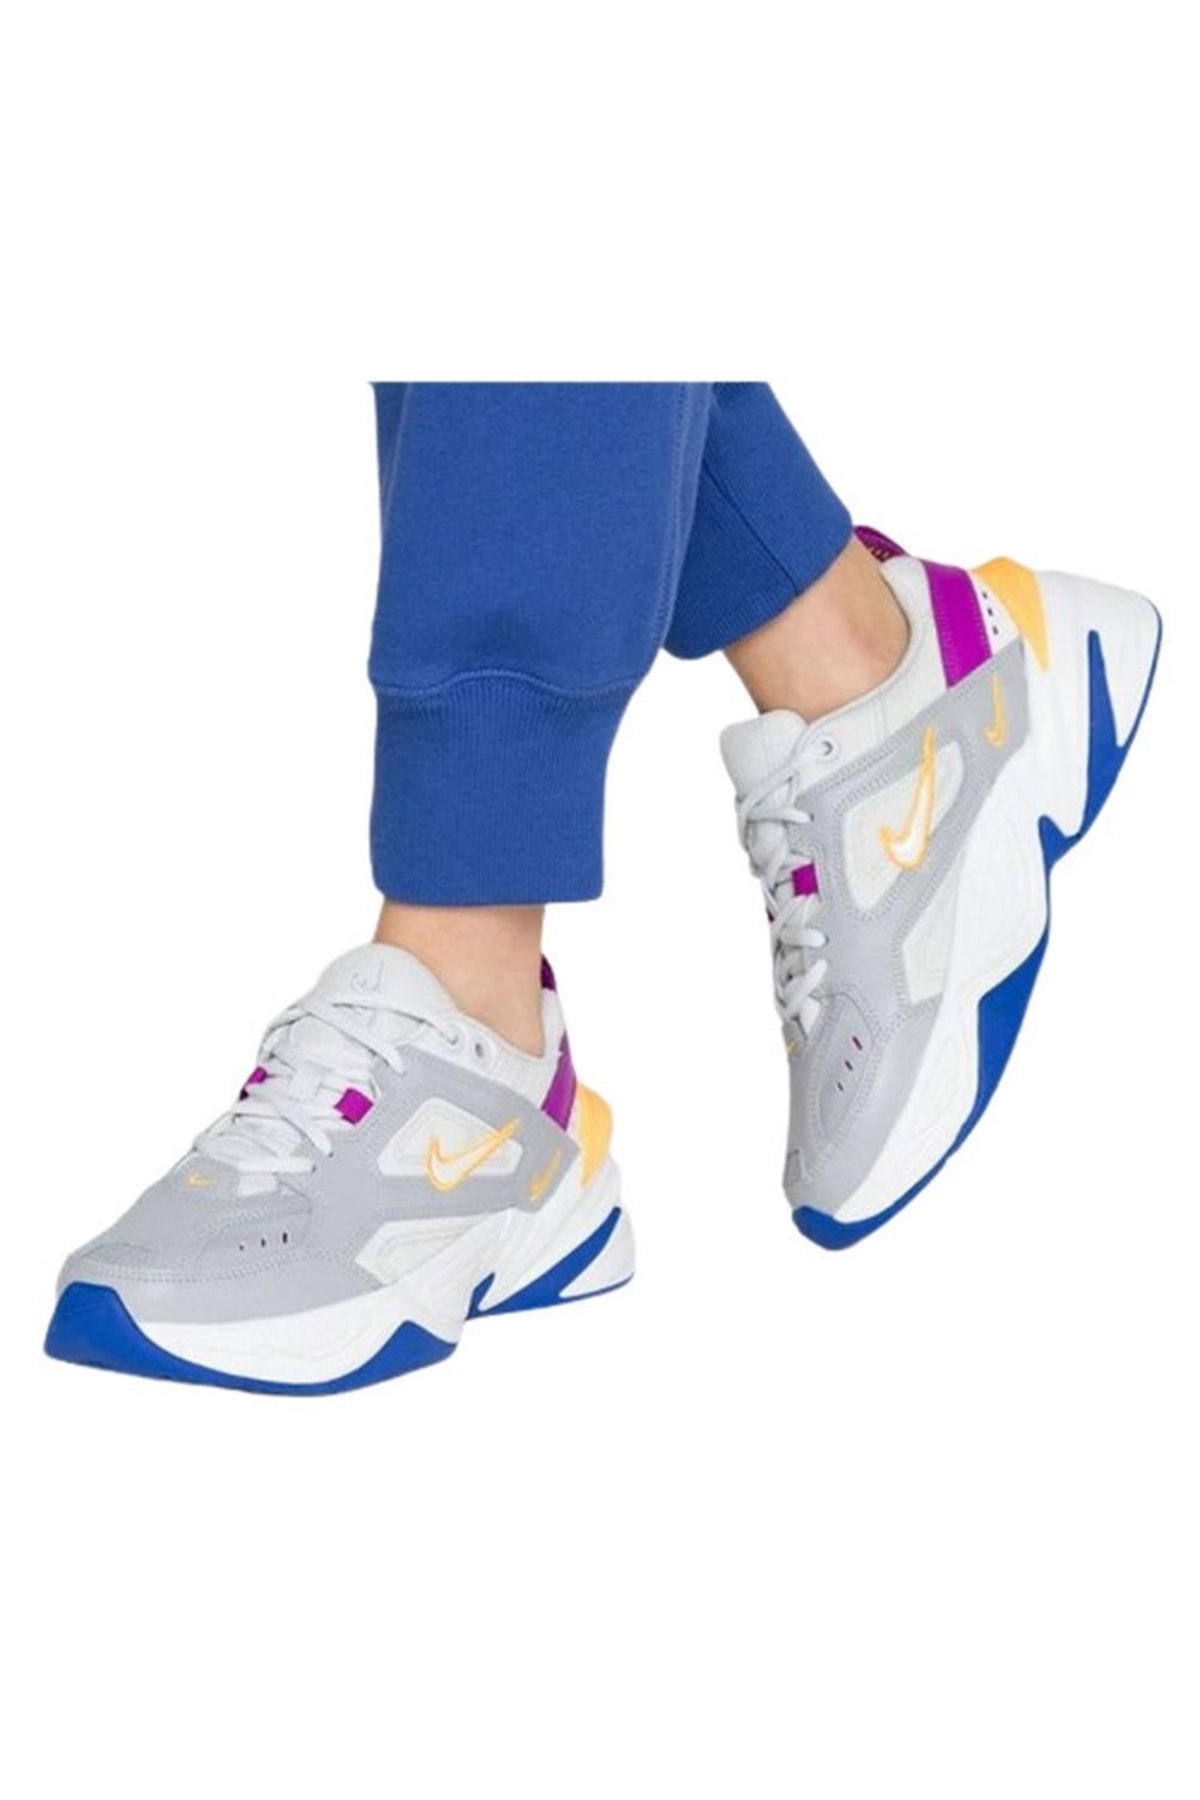 Culpa Proscrito fluir Nike M2k Tekno Kadın Yürüyüş Ayakkabı-ao3108-018 Fiyatı, Yorumları -  Trendyol